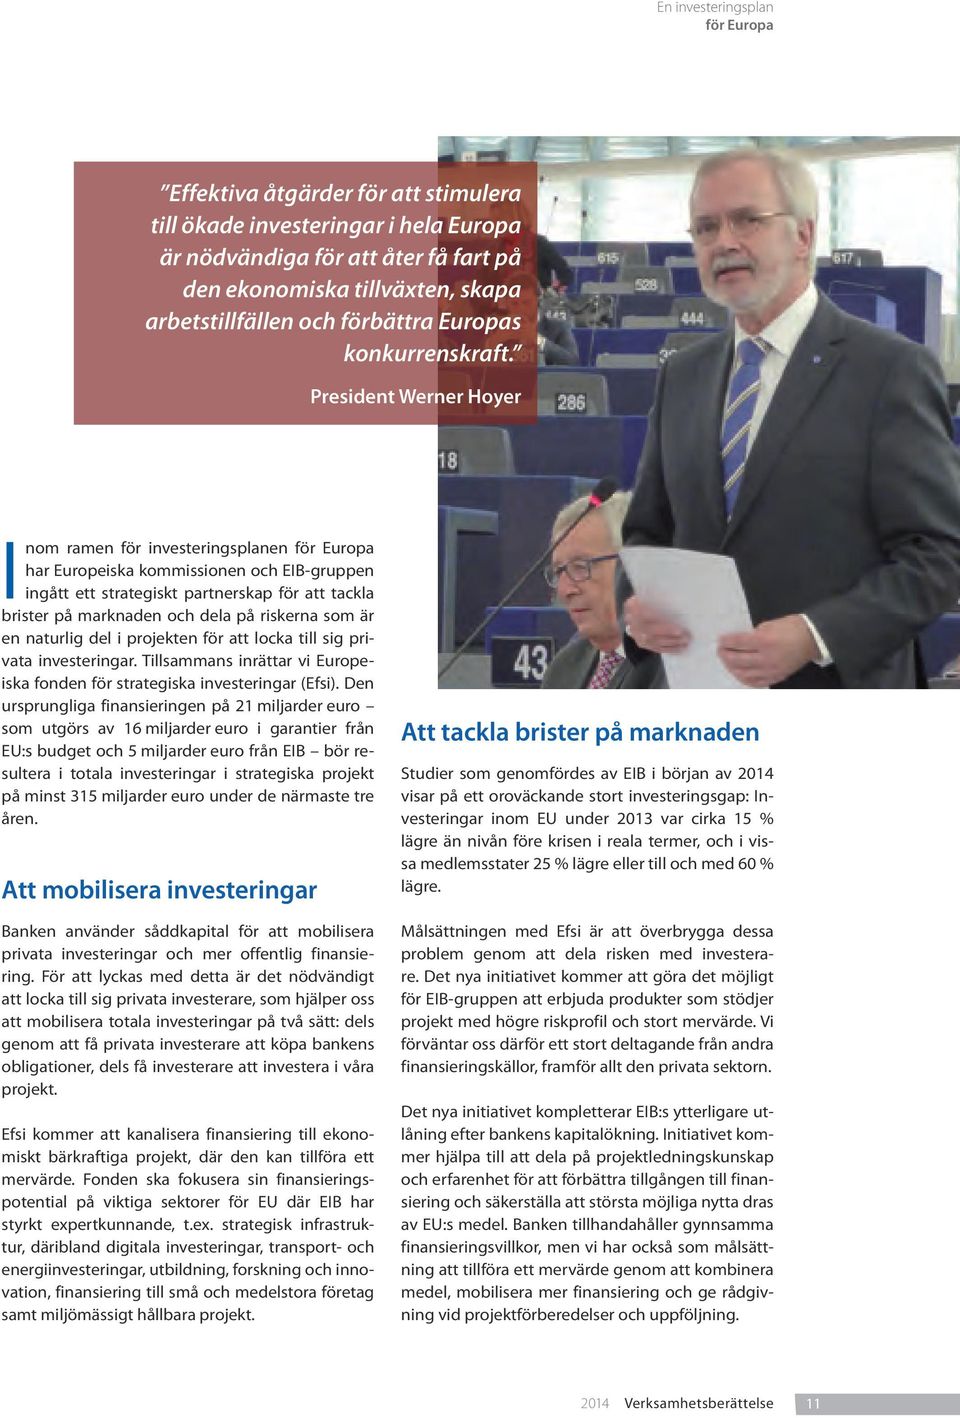 President Werner Hoyer Inom ramen för investeringsplanen för Europa har Europeiska kommissionen och EIB-gruppen ingått ett strategiskt partnerskap för att tackla brister på marknaden och dela på